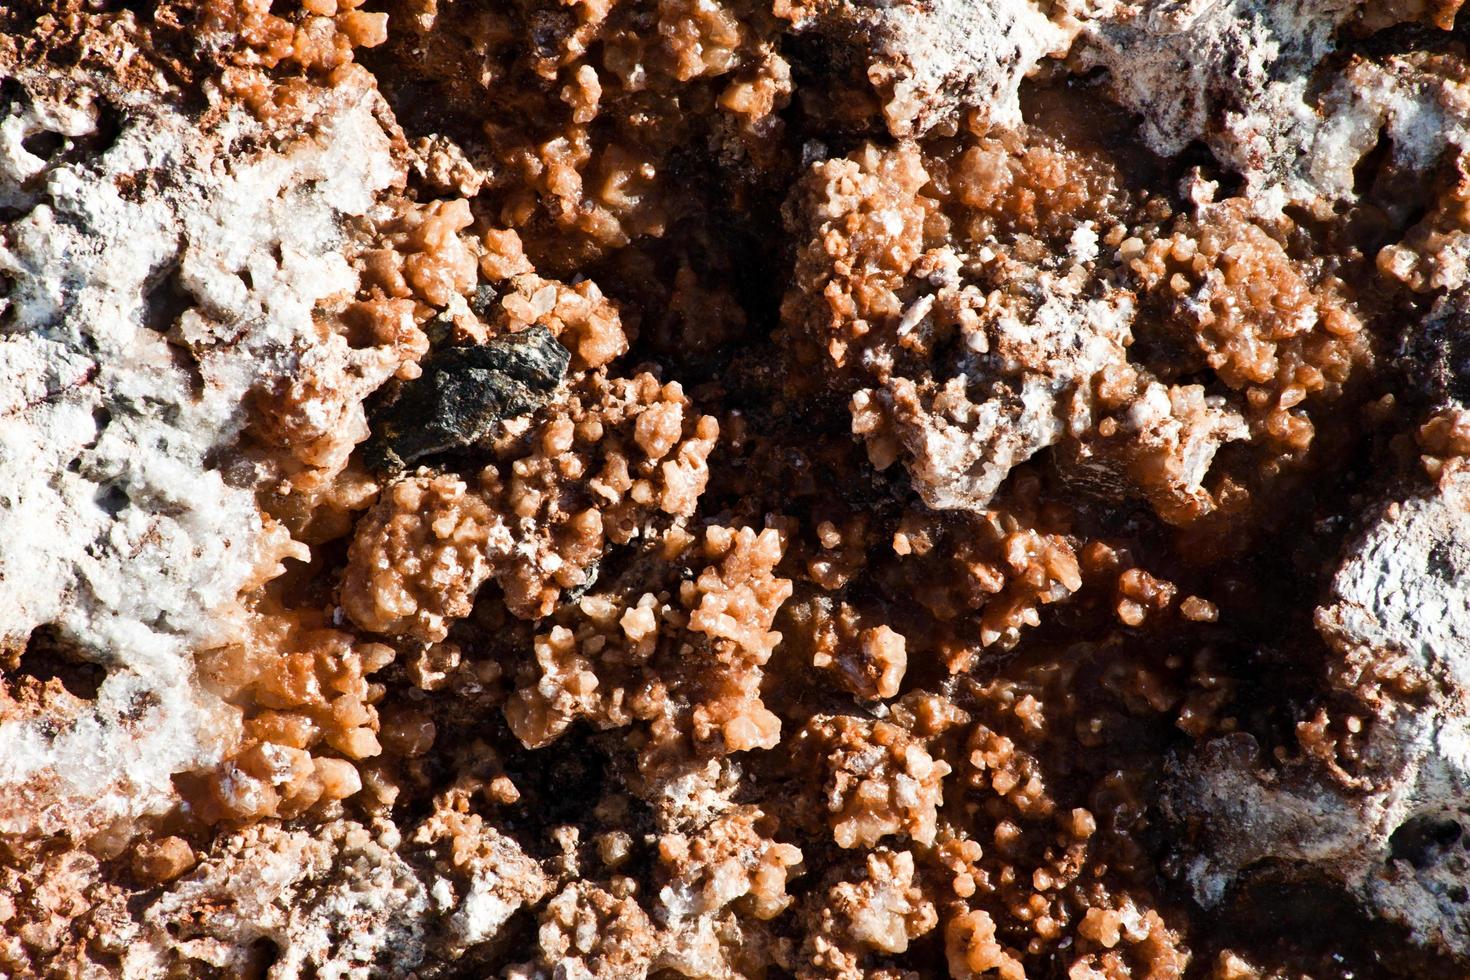 natuurlijk patroon zoute rotsen oppervlak foto